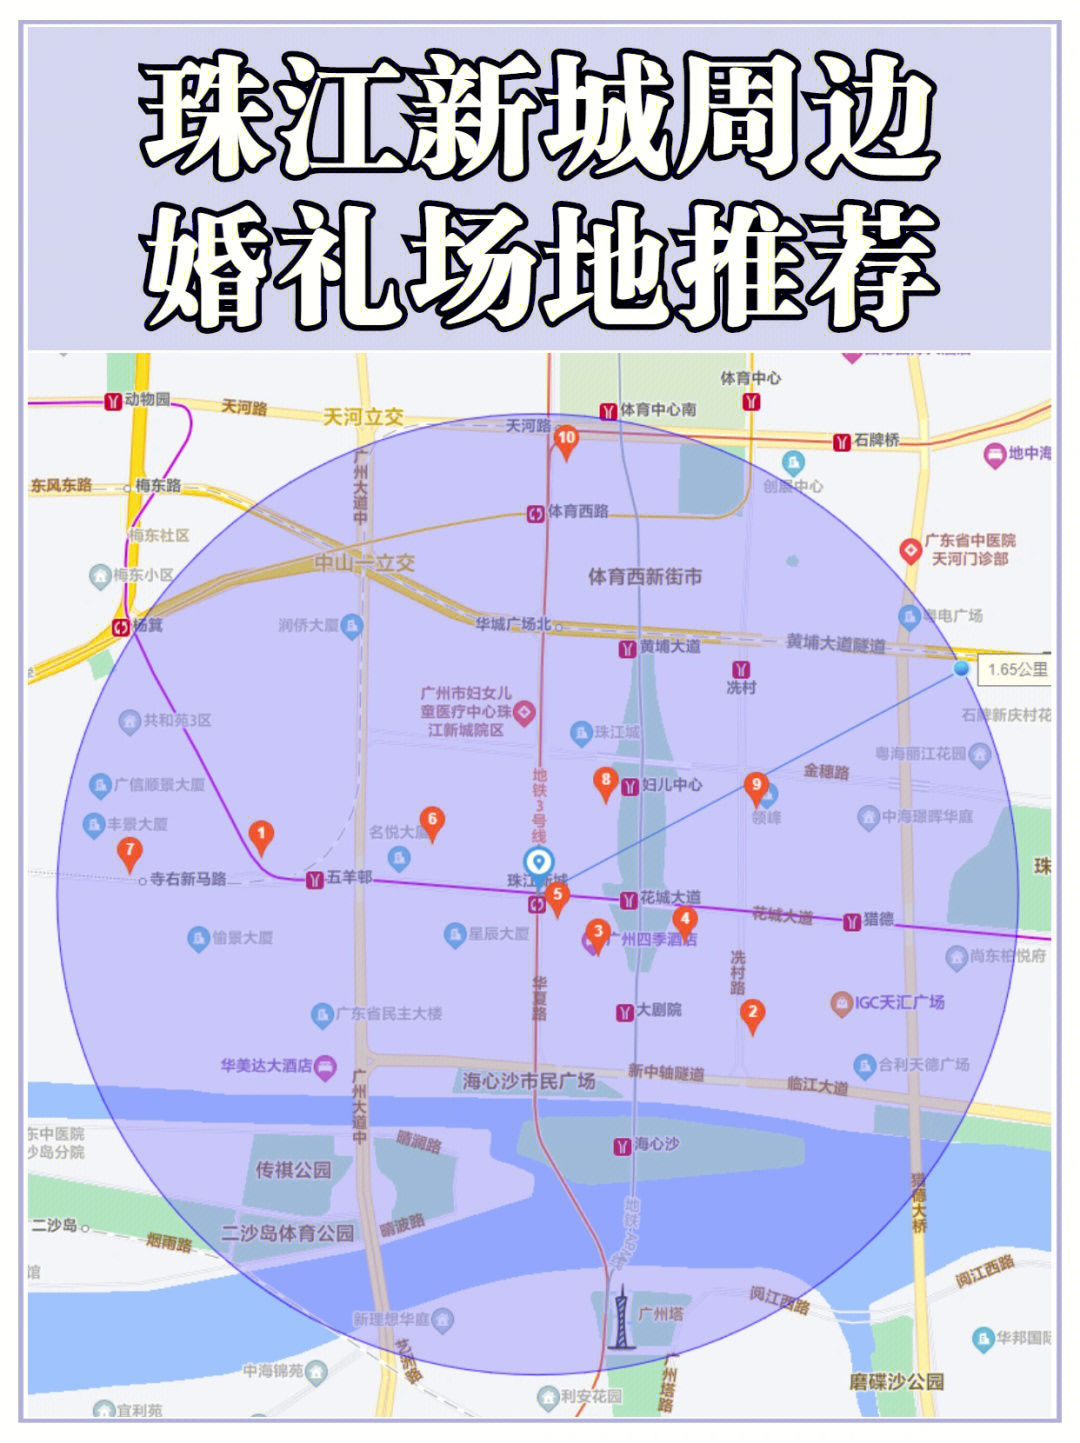 广州时尚天河内部地图图片